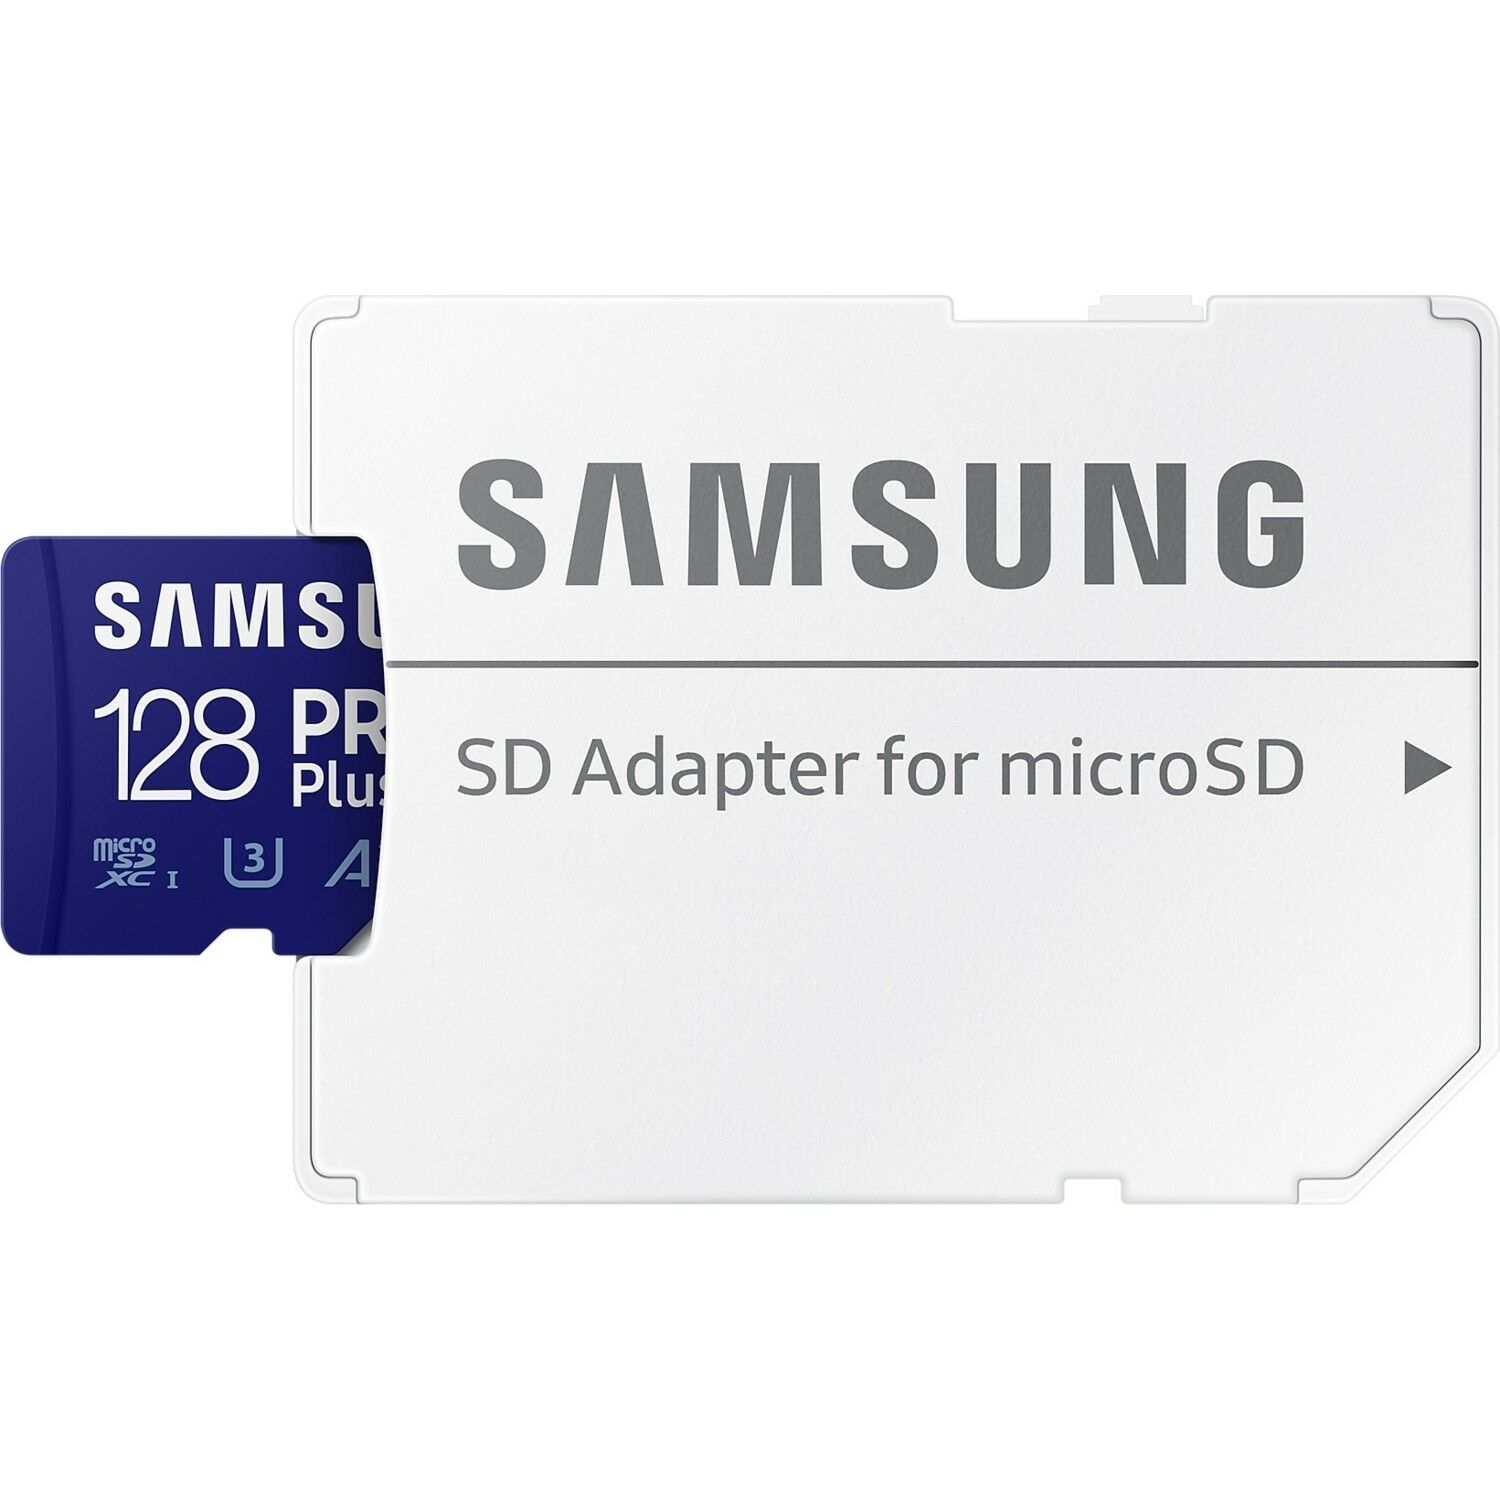 Samsung Pro Plus 128GB Microsdxc Hafıza Kartı MB-MD128KA